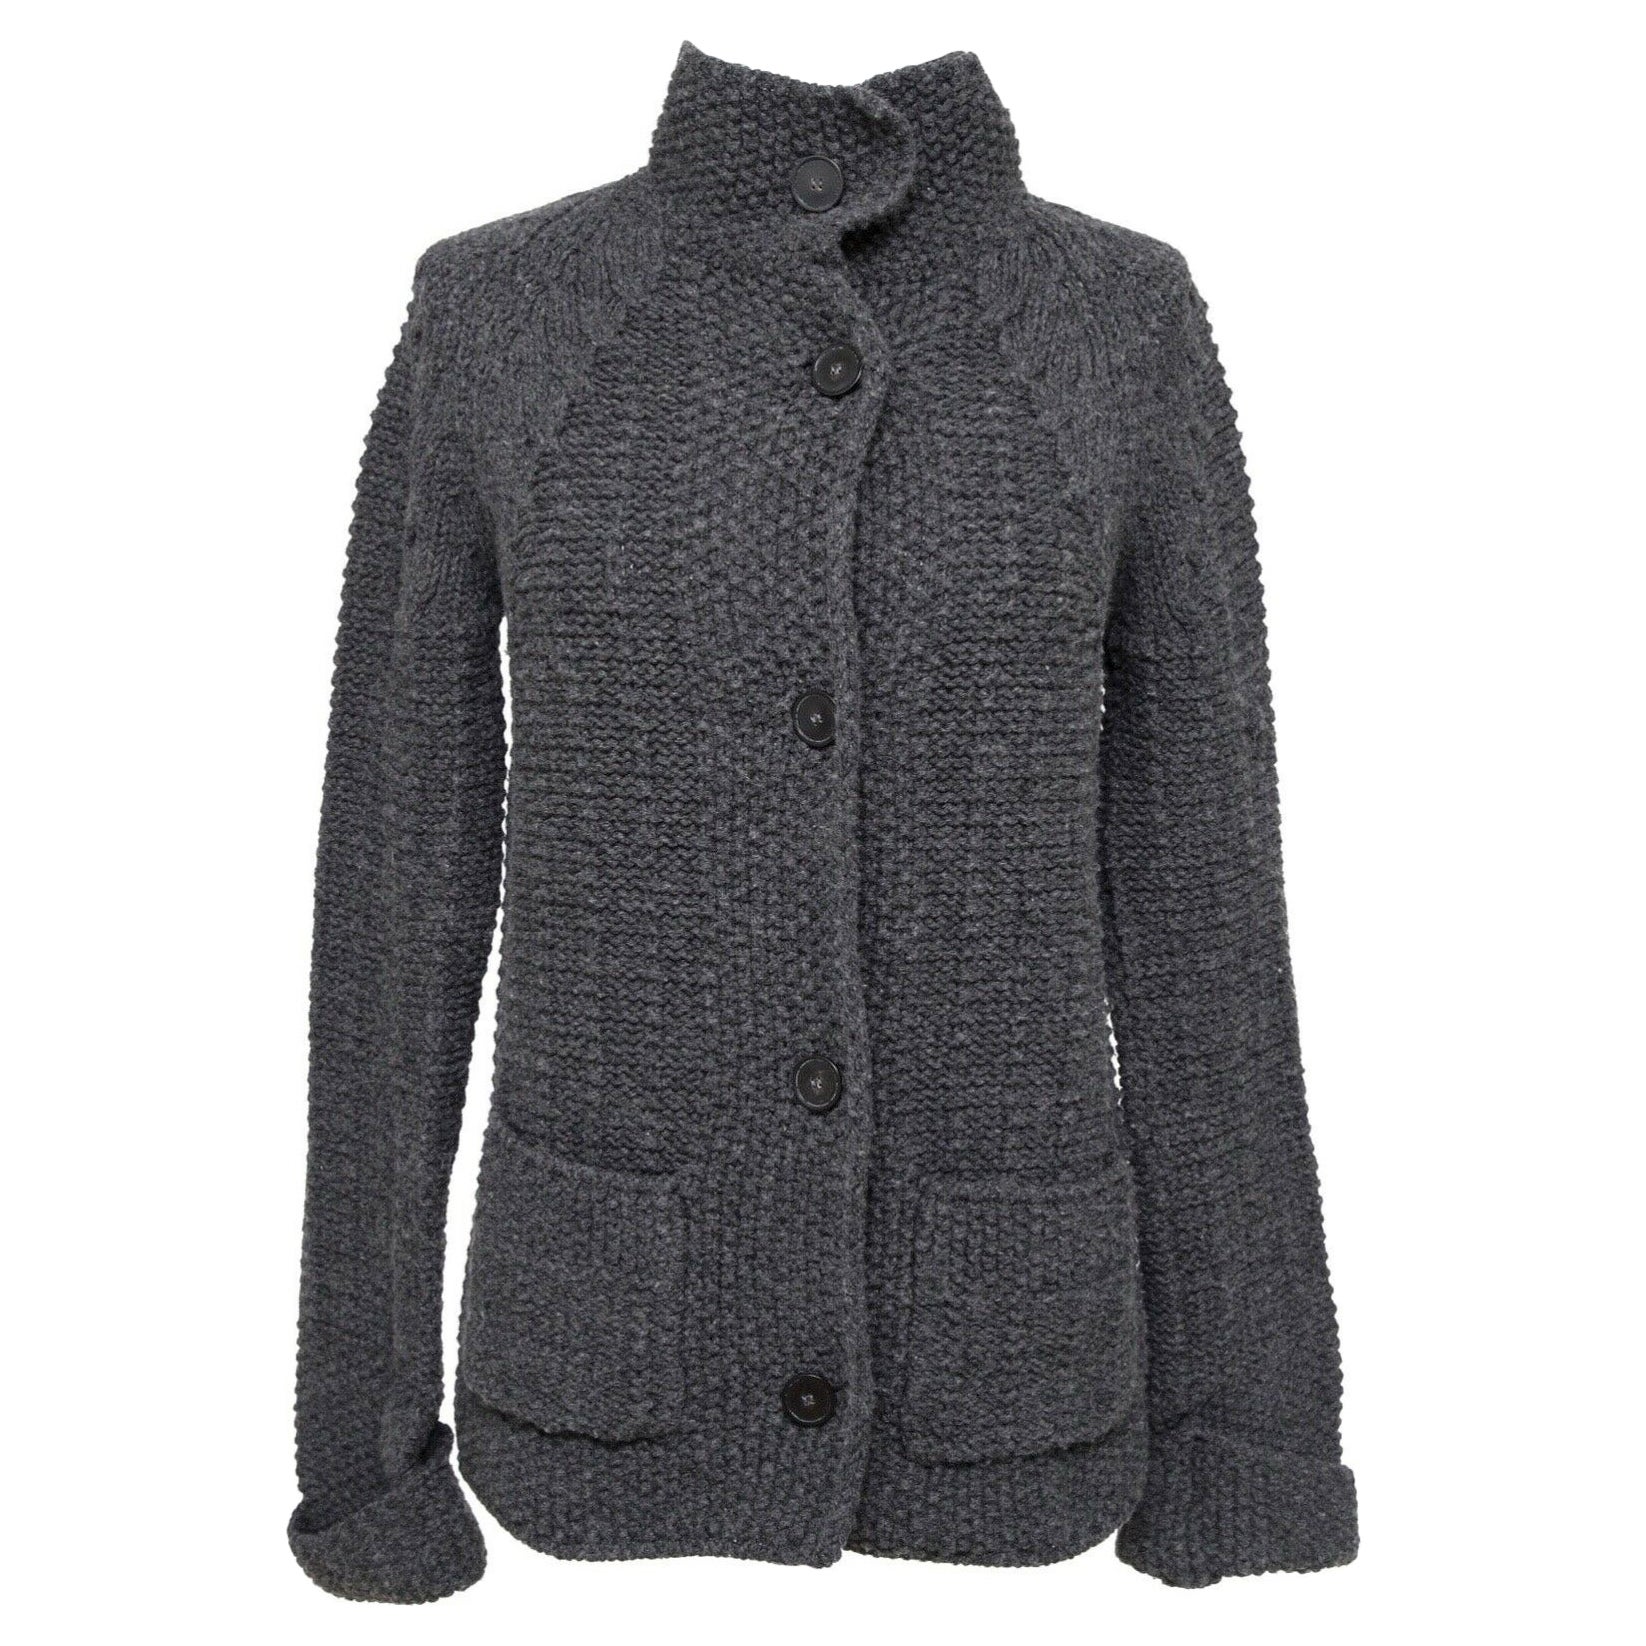 CHLOE Strickjacke Pulloverjacke mit langen Ärmeln CHARCOAL GREY Gr. XS 2011